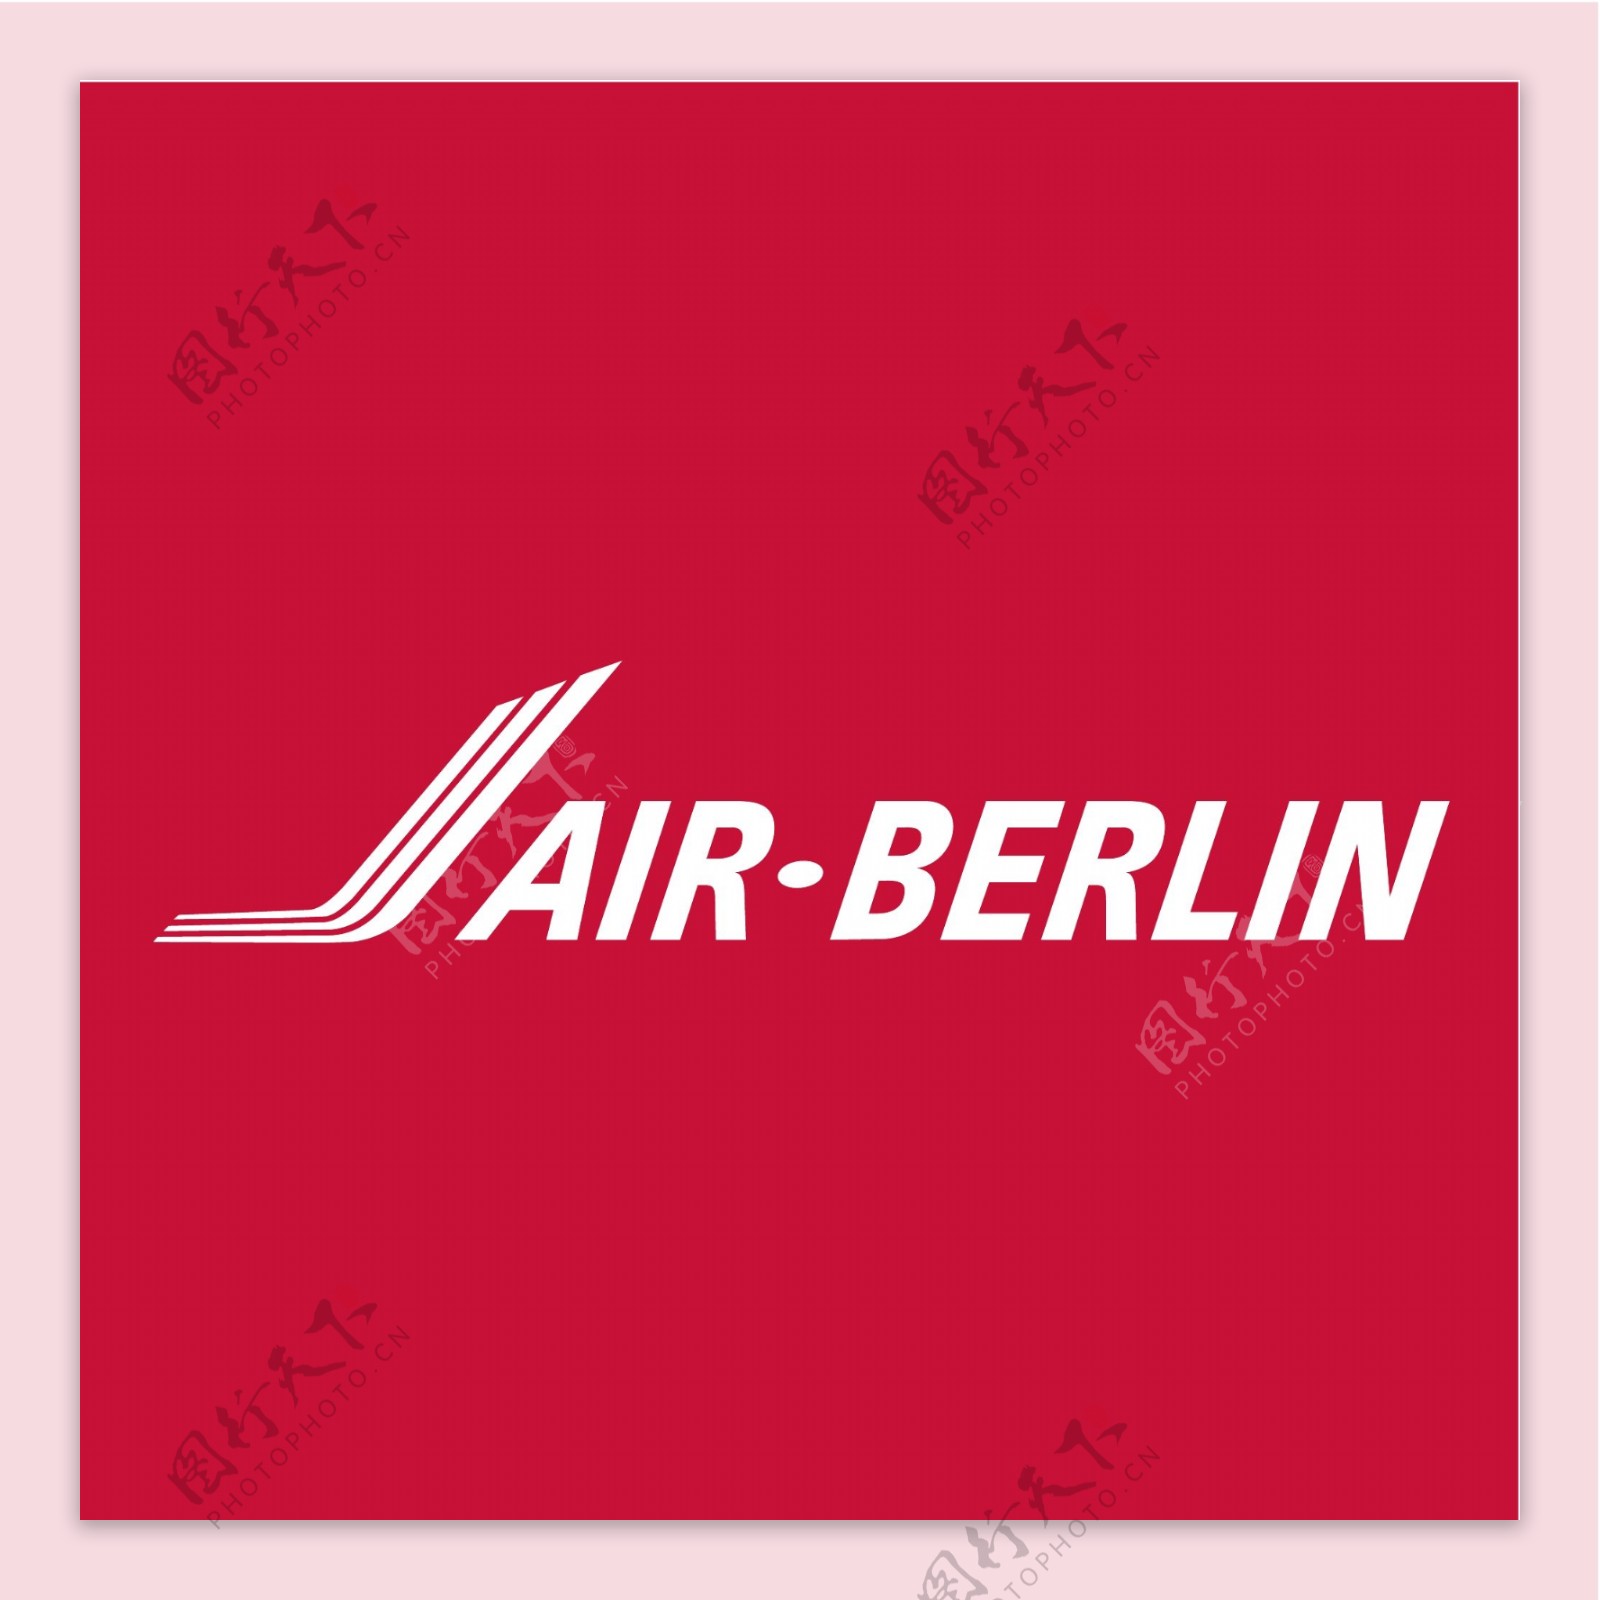 柏林航空标志